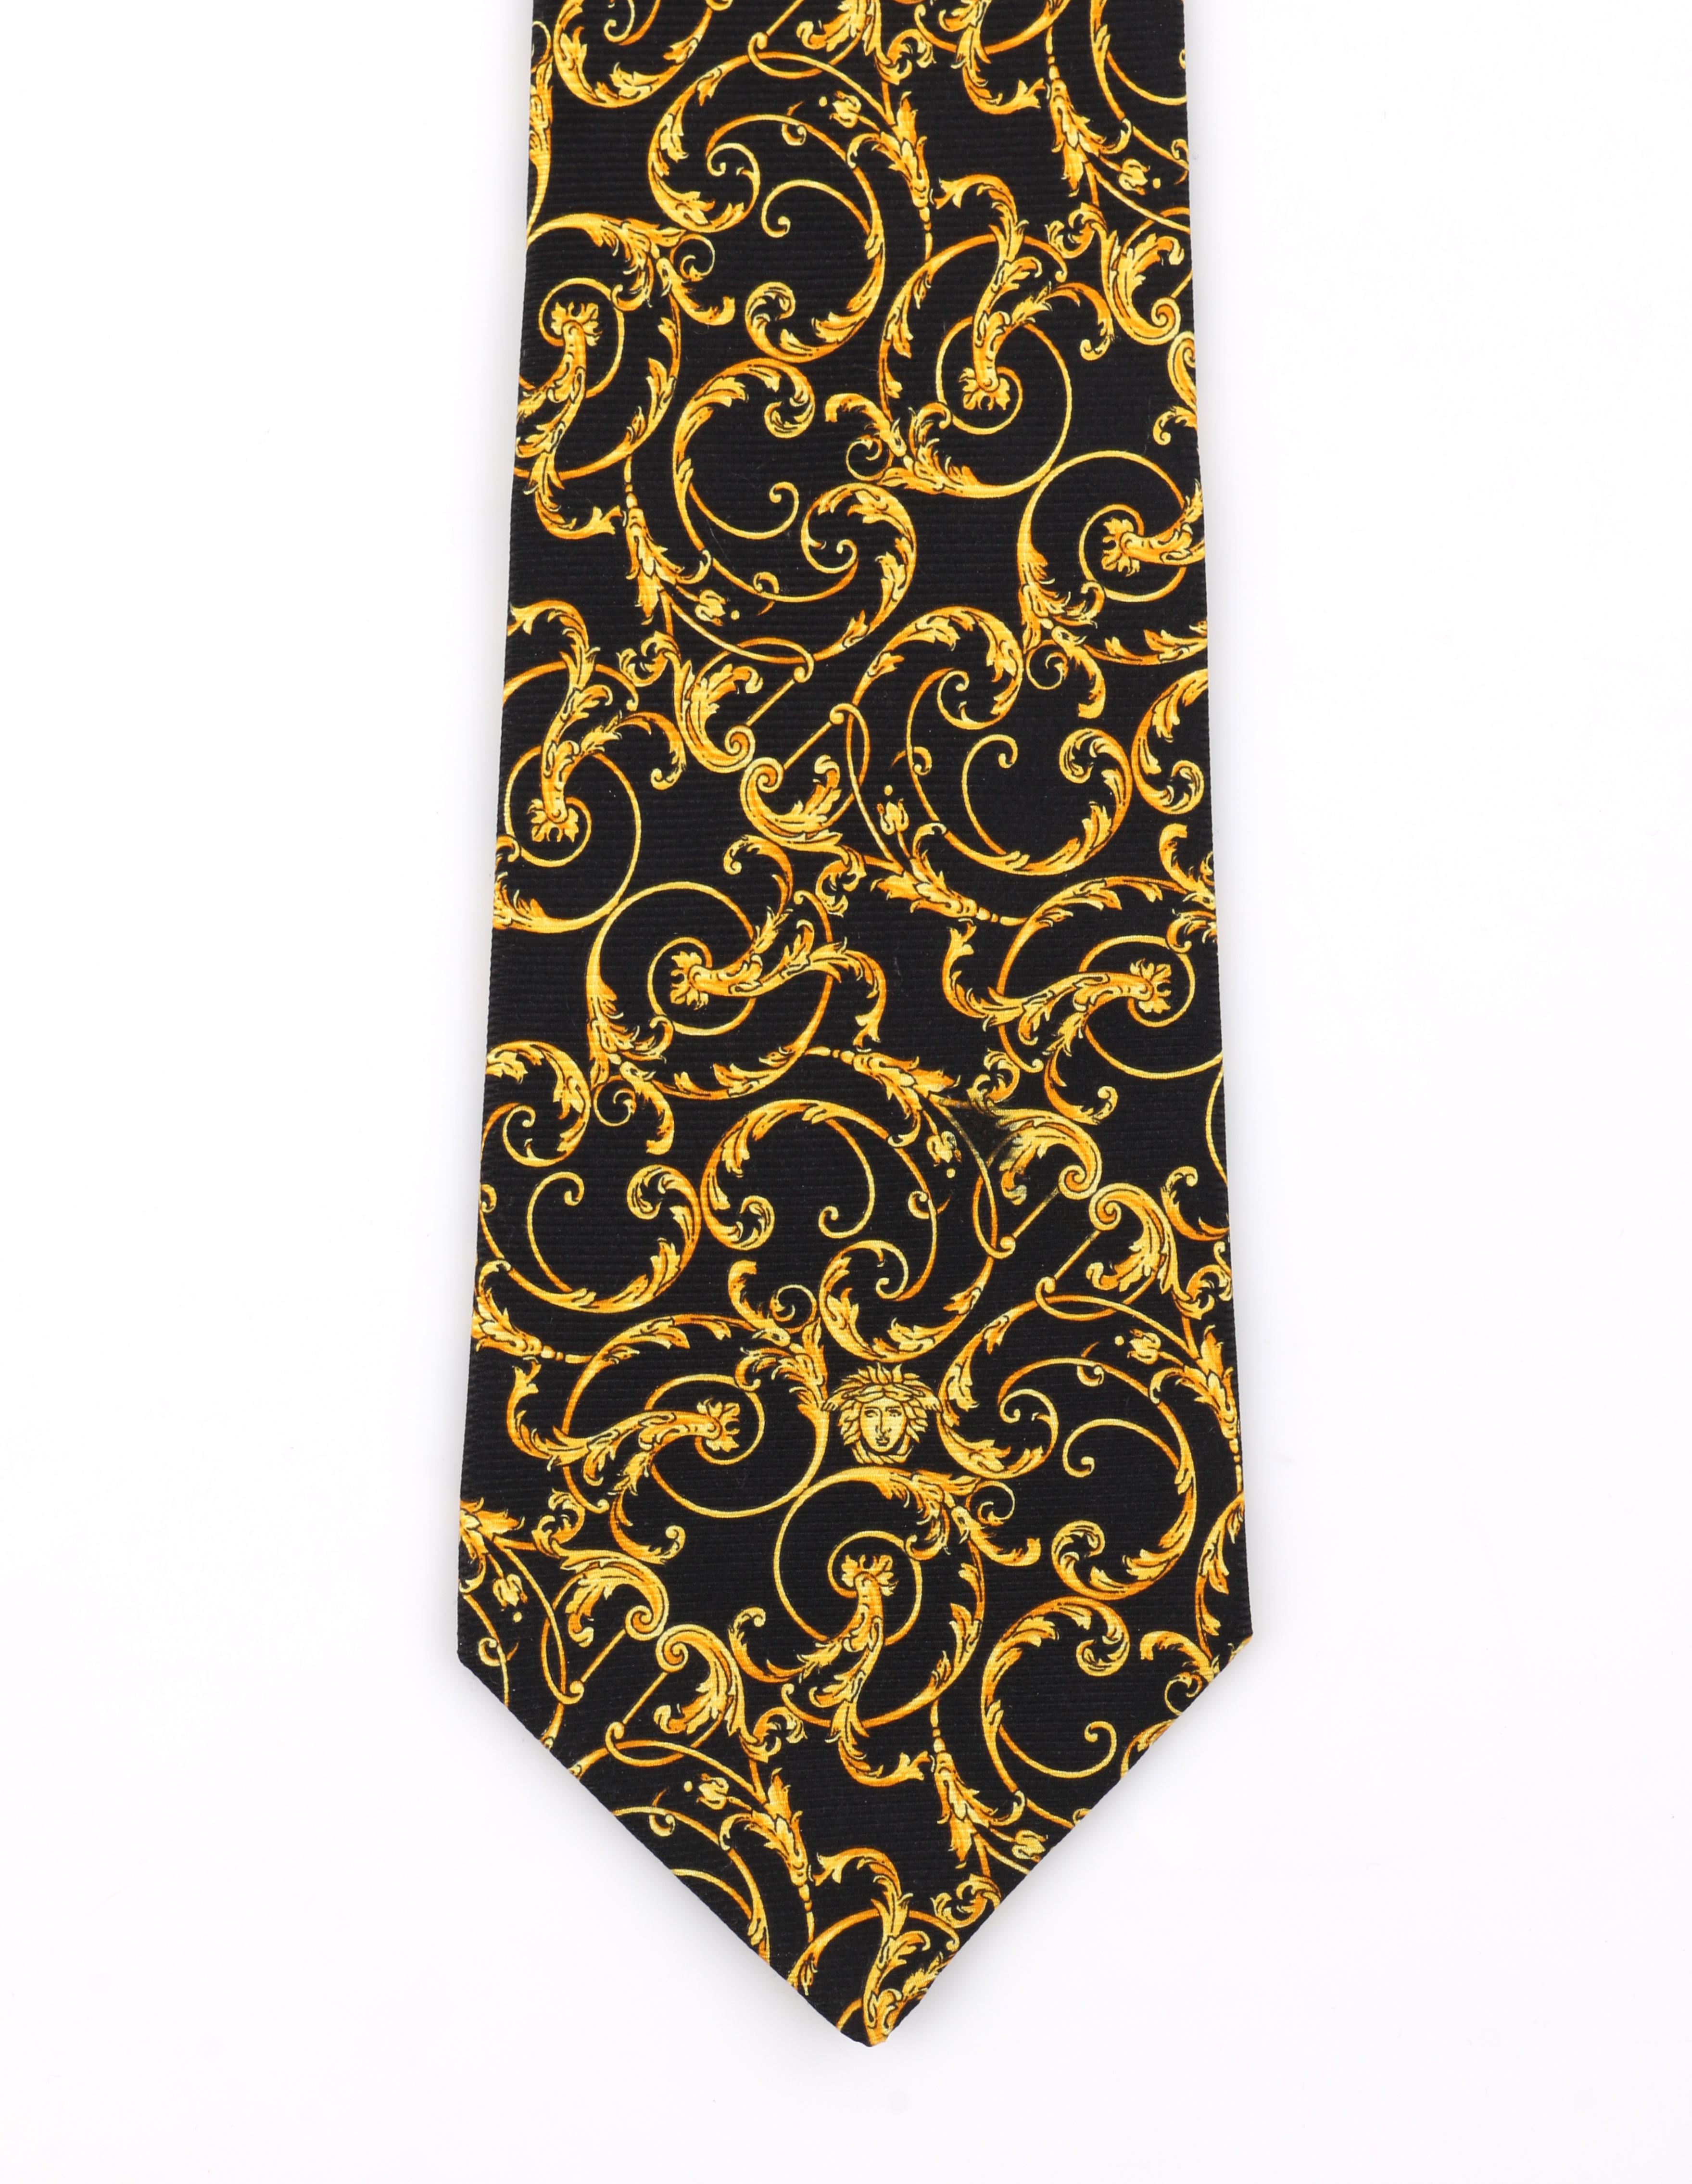 Men's GIANNI VERSACE c.1990's Baroque Medusa Head Print Silk Necktie Tie